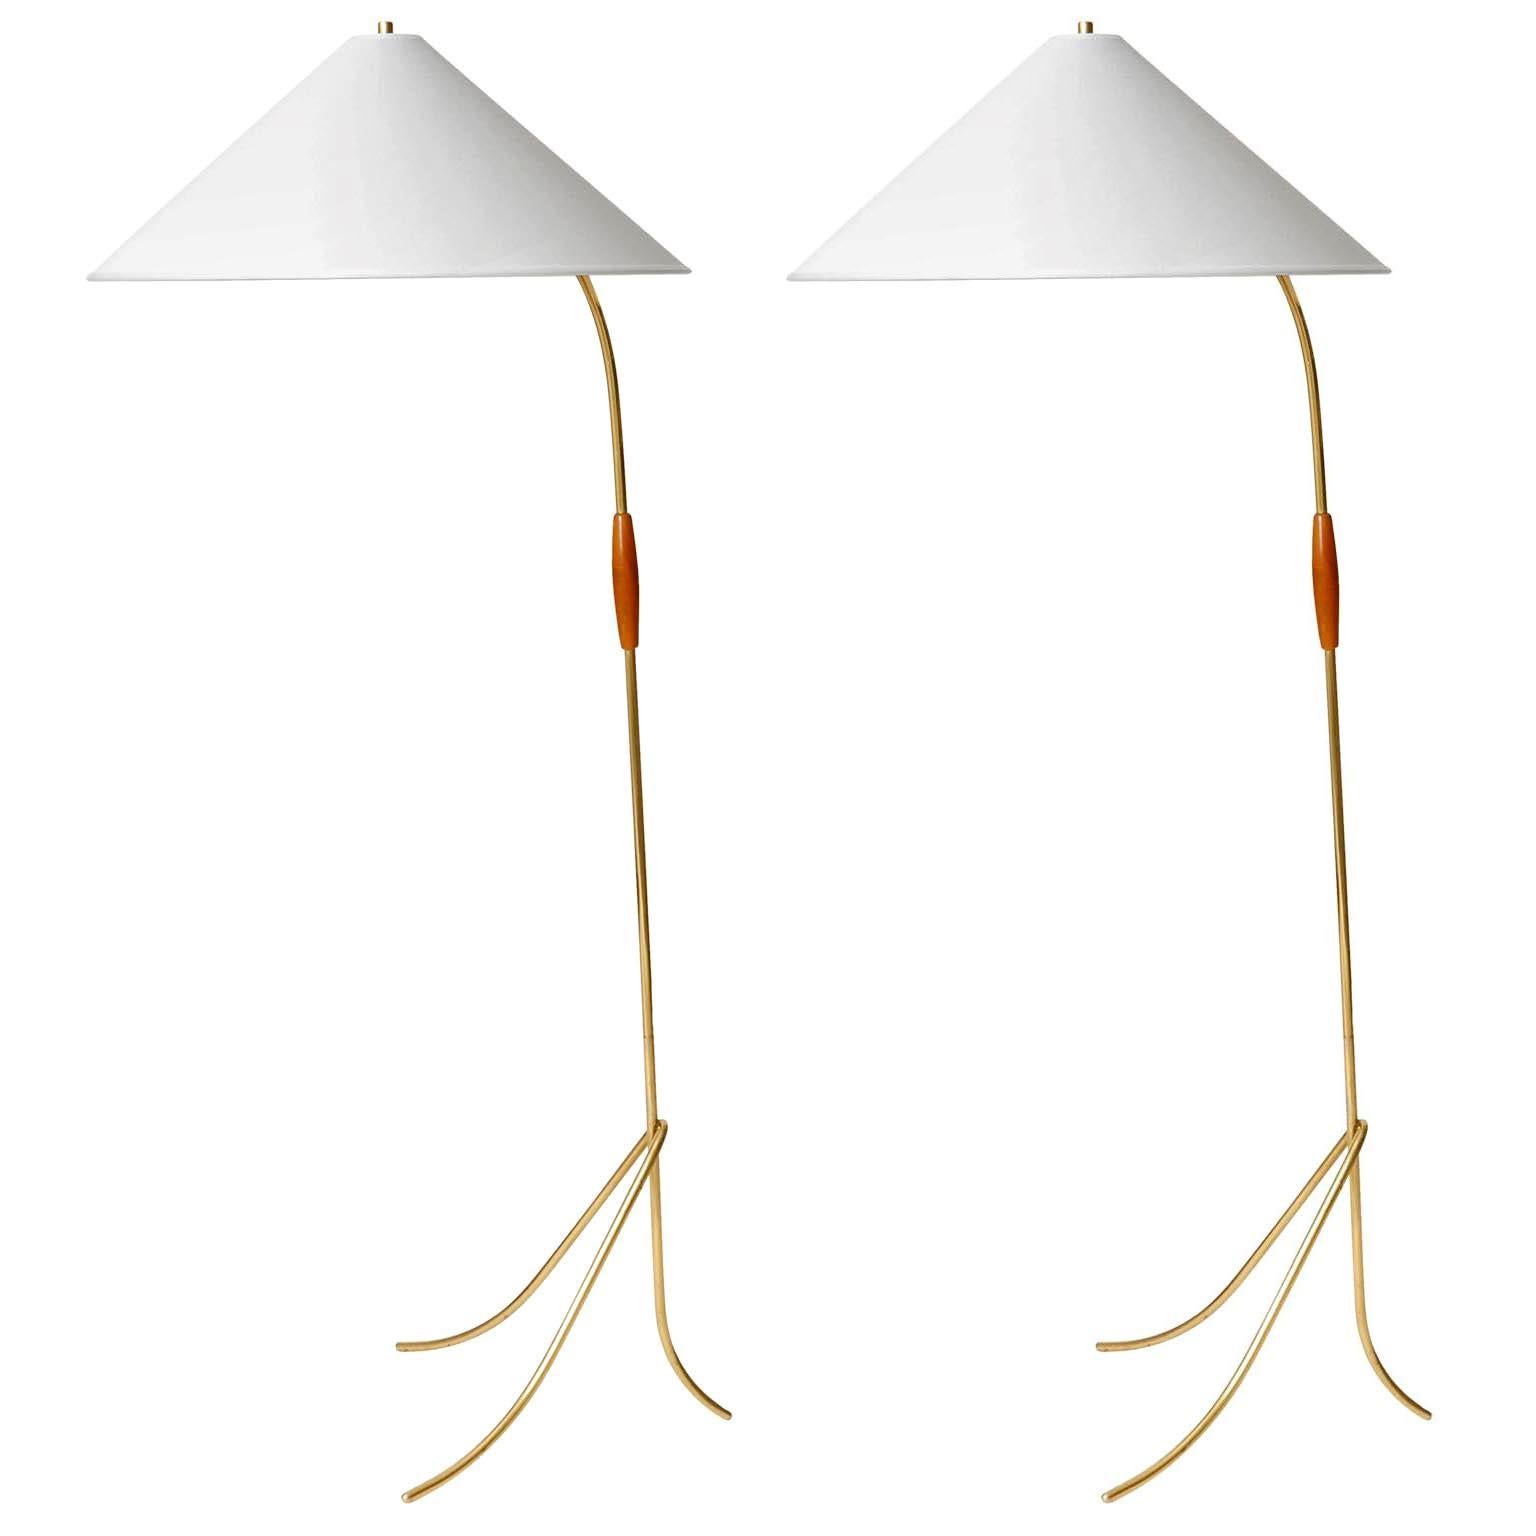 Un des deux magnifiques lampadaires de Rupert Nikoll, Autriche, fabriqués au milieu du siècle, vers 1960 (fin des années 1950 ou début des années 1960).
Cette lampe est très similaire au modèle de lampadaire 'Hase' (engl. lapin) conçu par J.T.